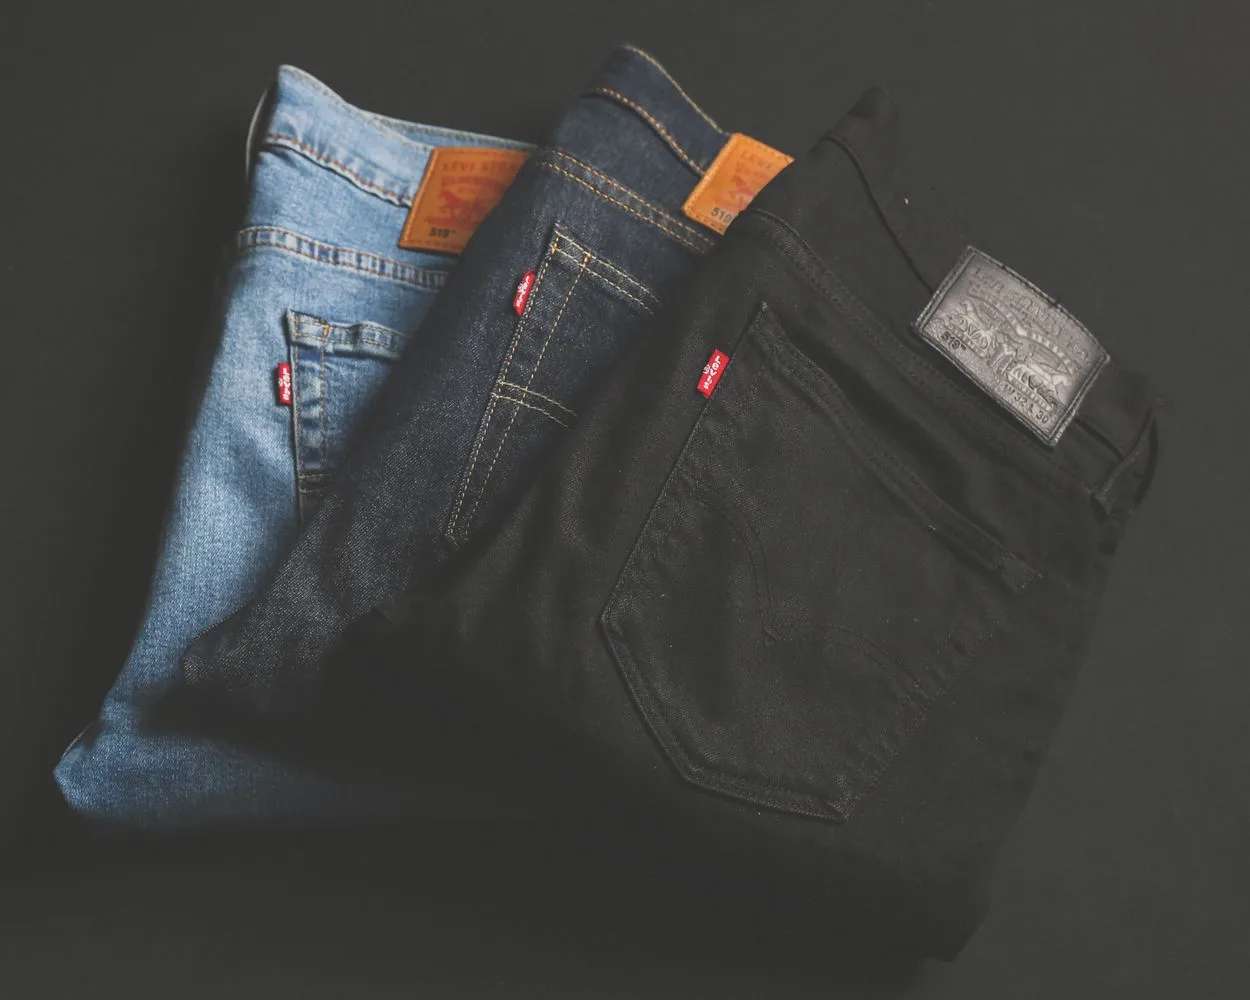  Wat is het verschil tussen high-rise en high-waist jeans - Alle verschillen